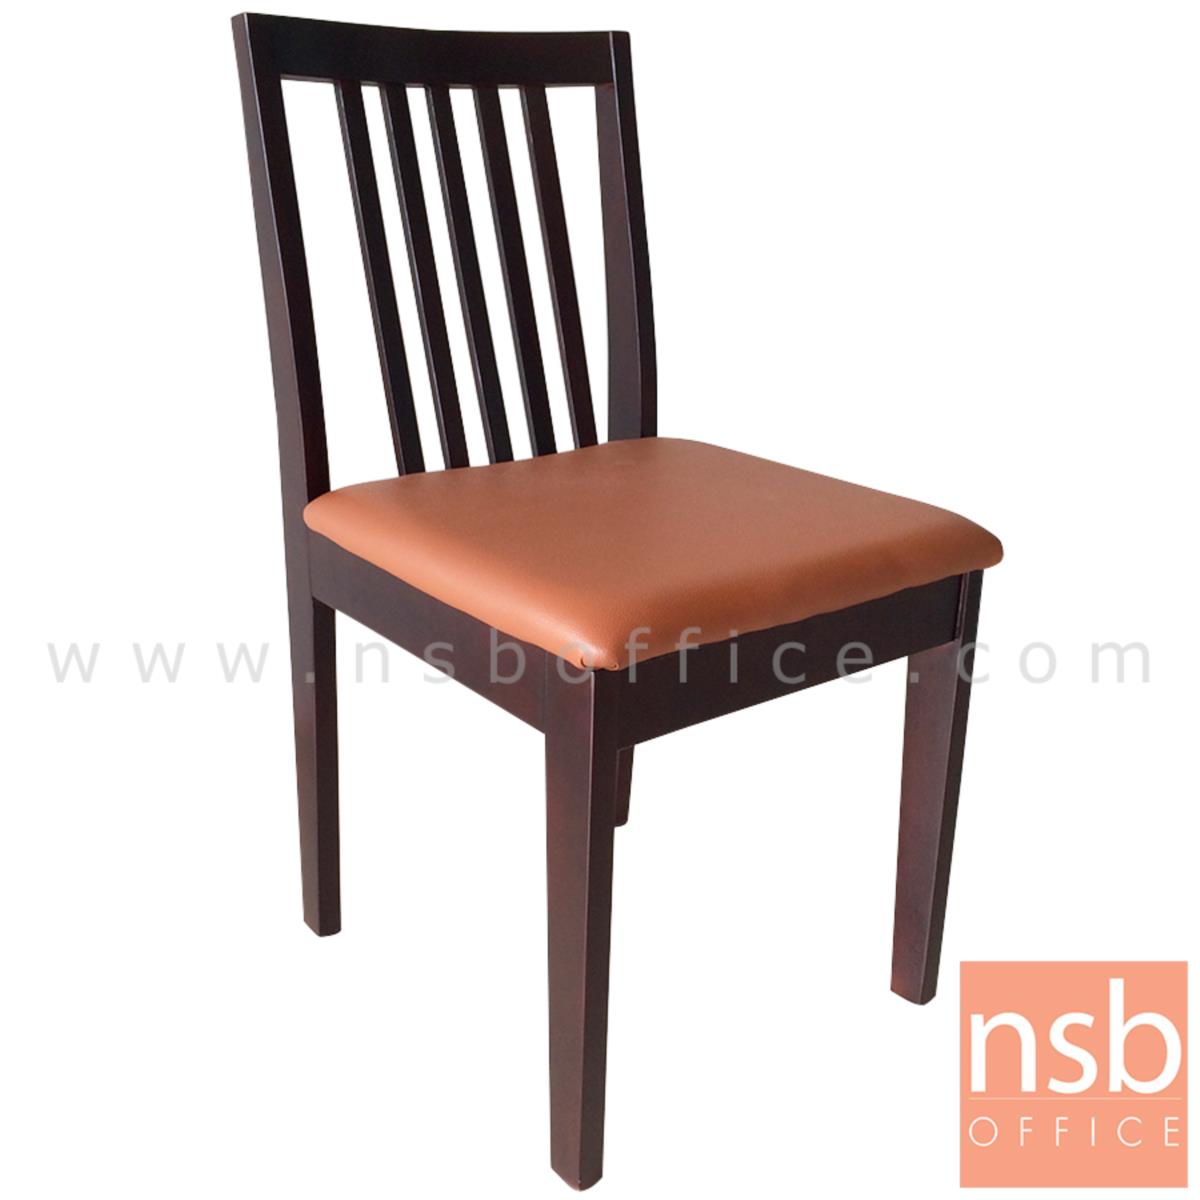 B22A187:เก้าอี้ไม้ที่นั่งหุ้มหนังเทียม รุ่น Tanzania (แทนซาเนีย)  ขนาด 46W cm. ขาไม้